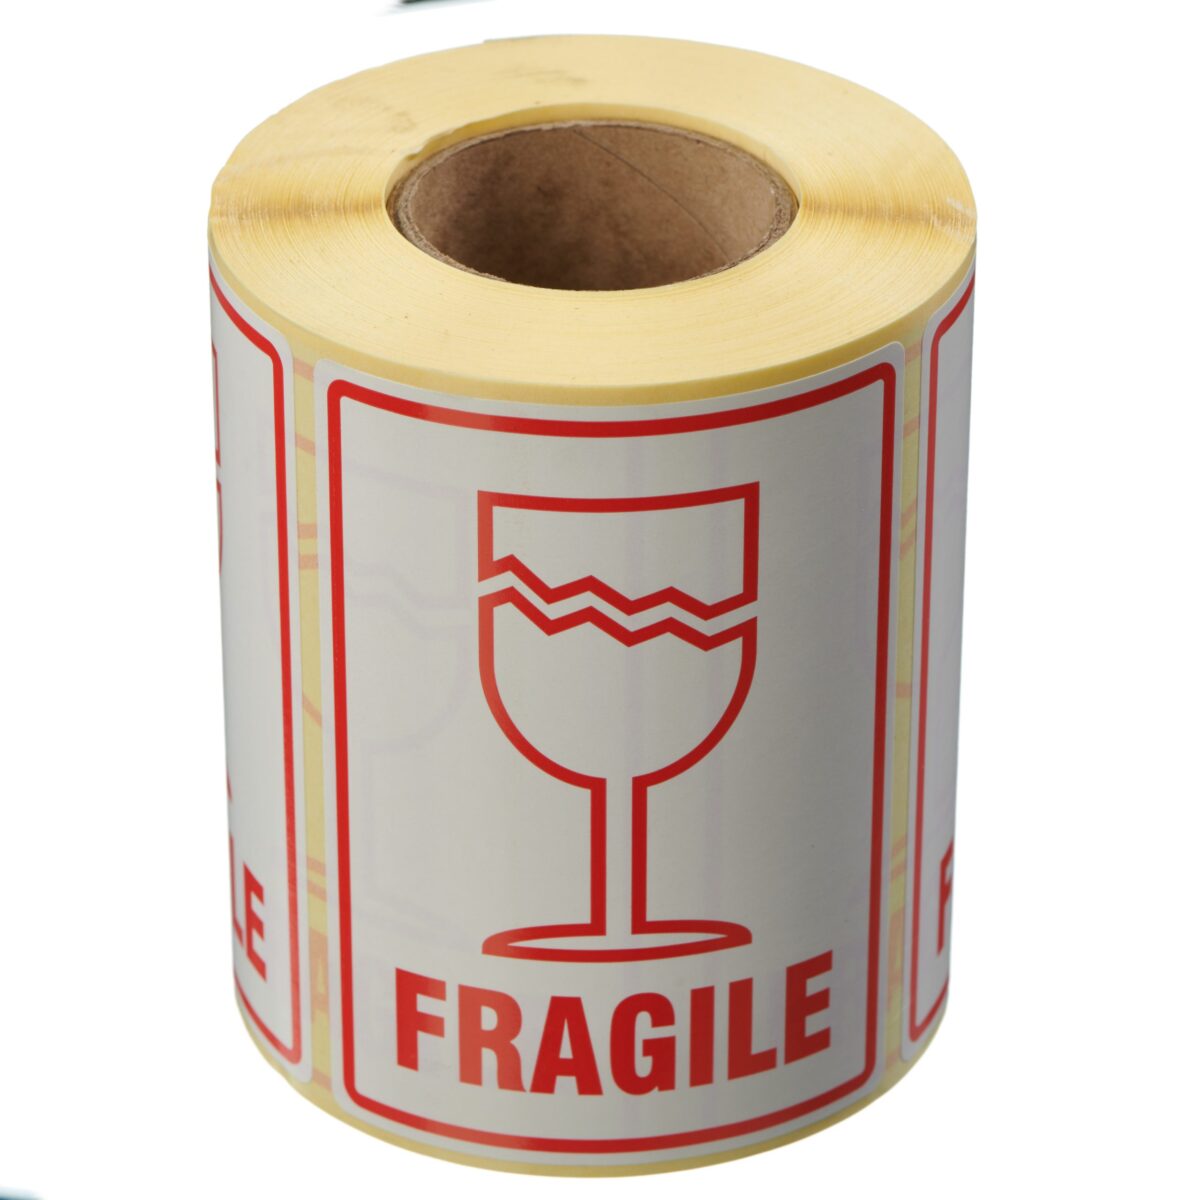 Fragile Label 108mm